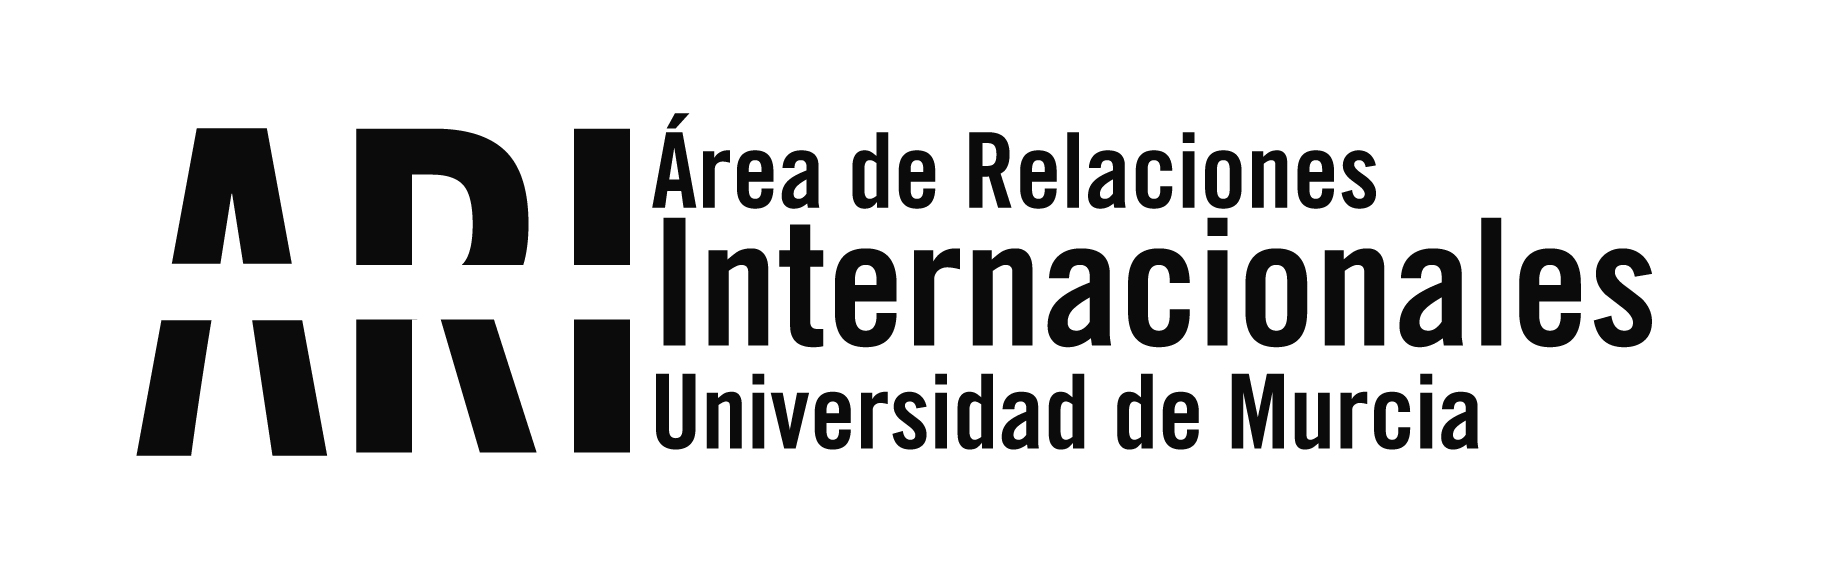 Asamblea Nacional CICUE-CRUE - Santiango de Compostela 8 y 9 de mayo 2014 - Área de Relaciones Internacionales